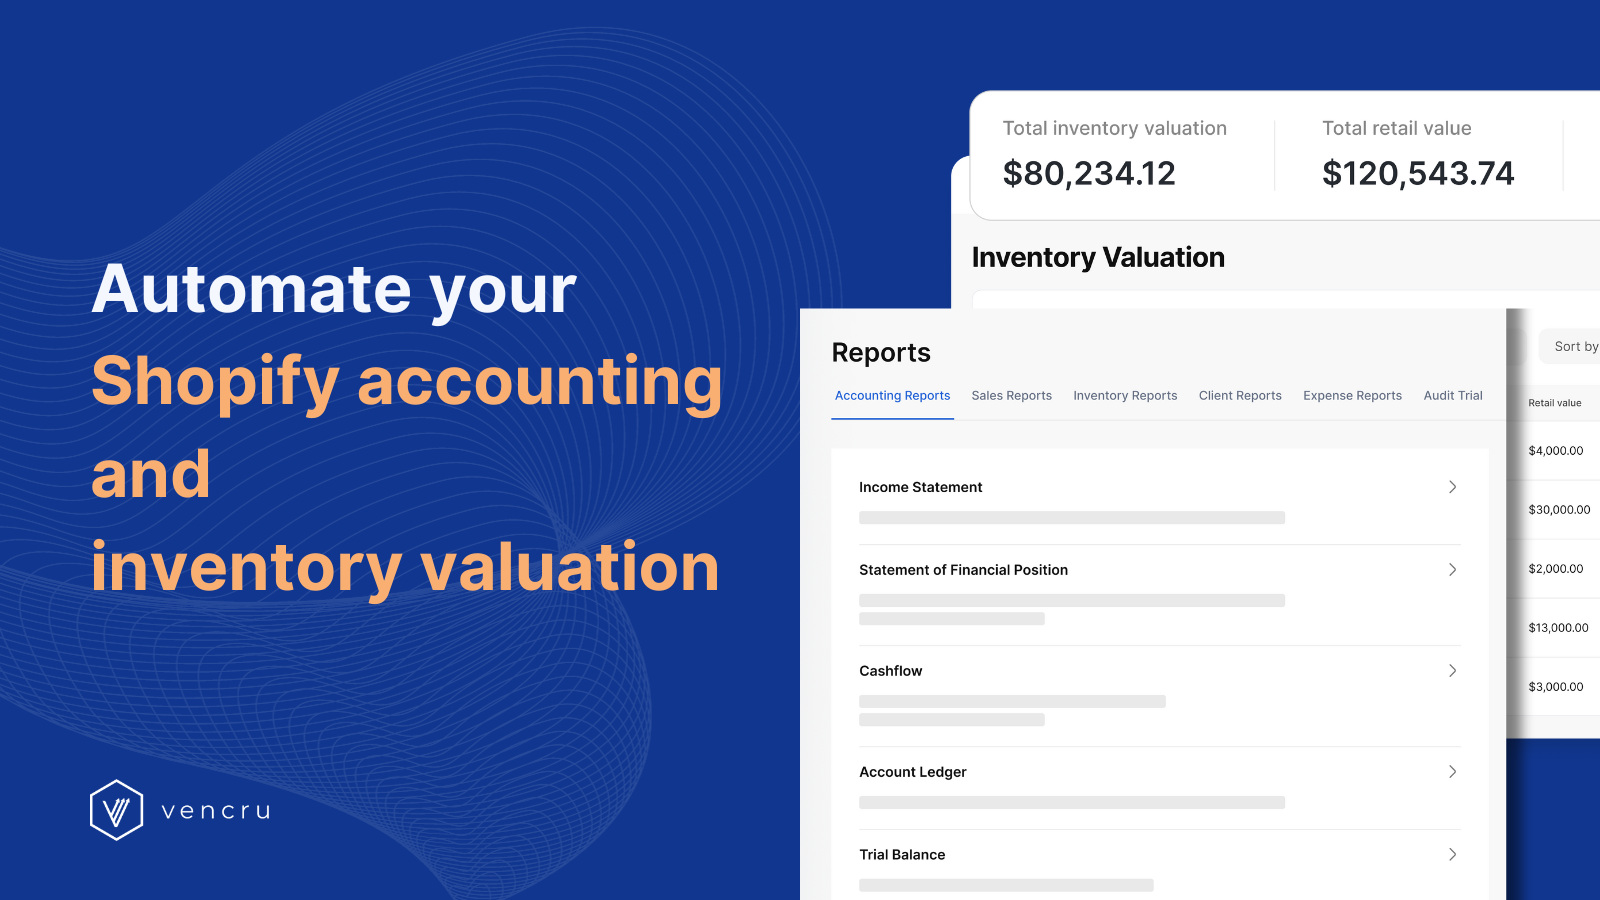 自动化您的Shopify会计和库存估值